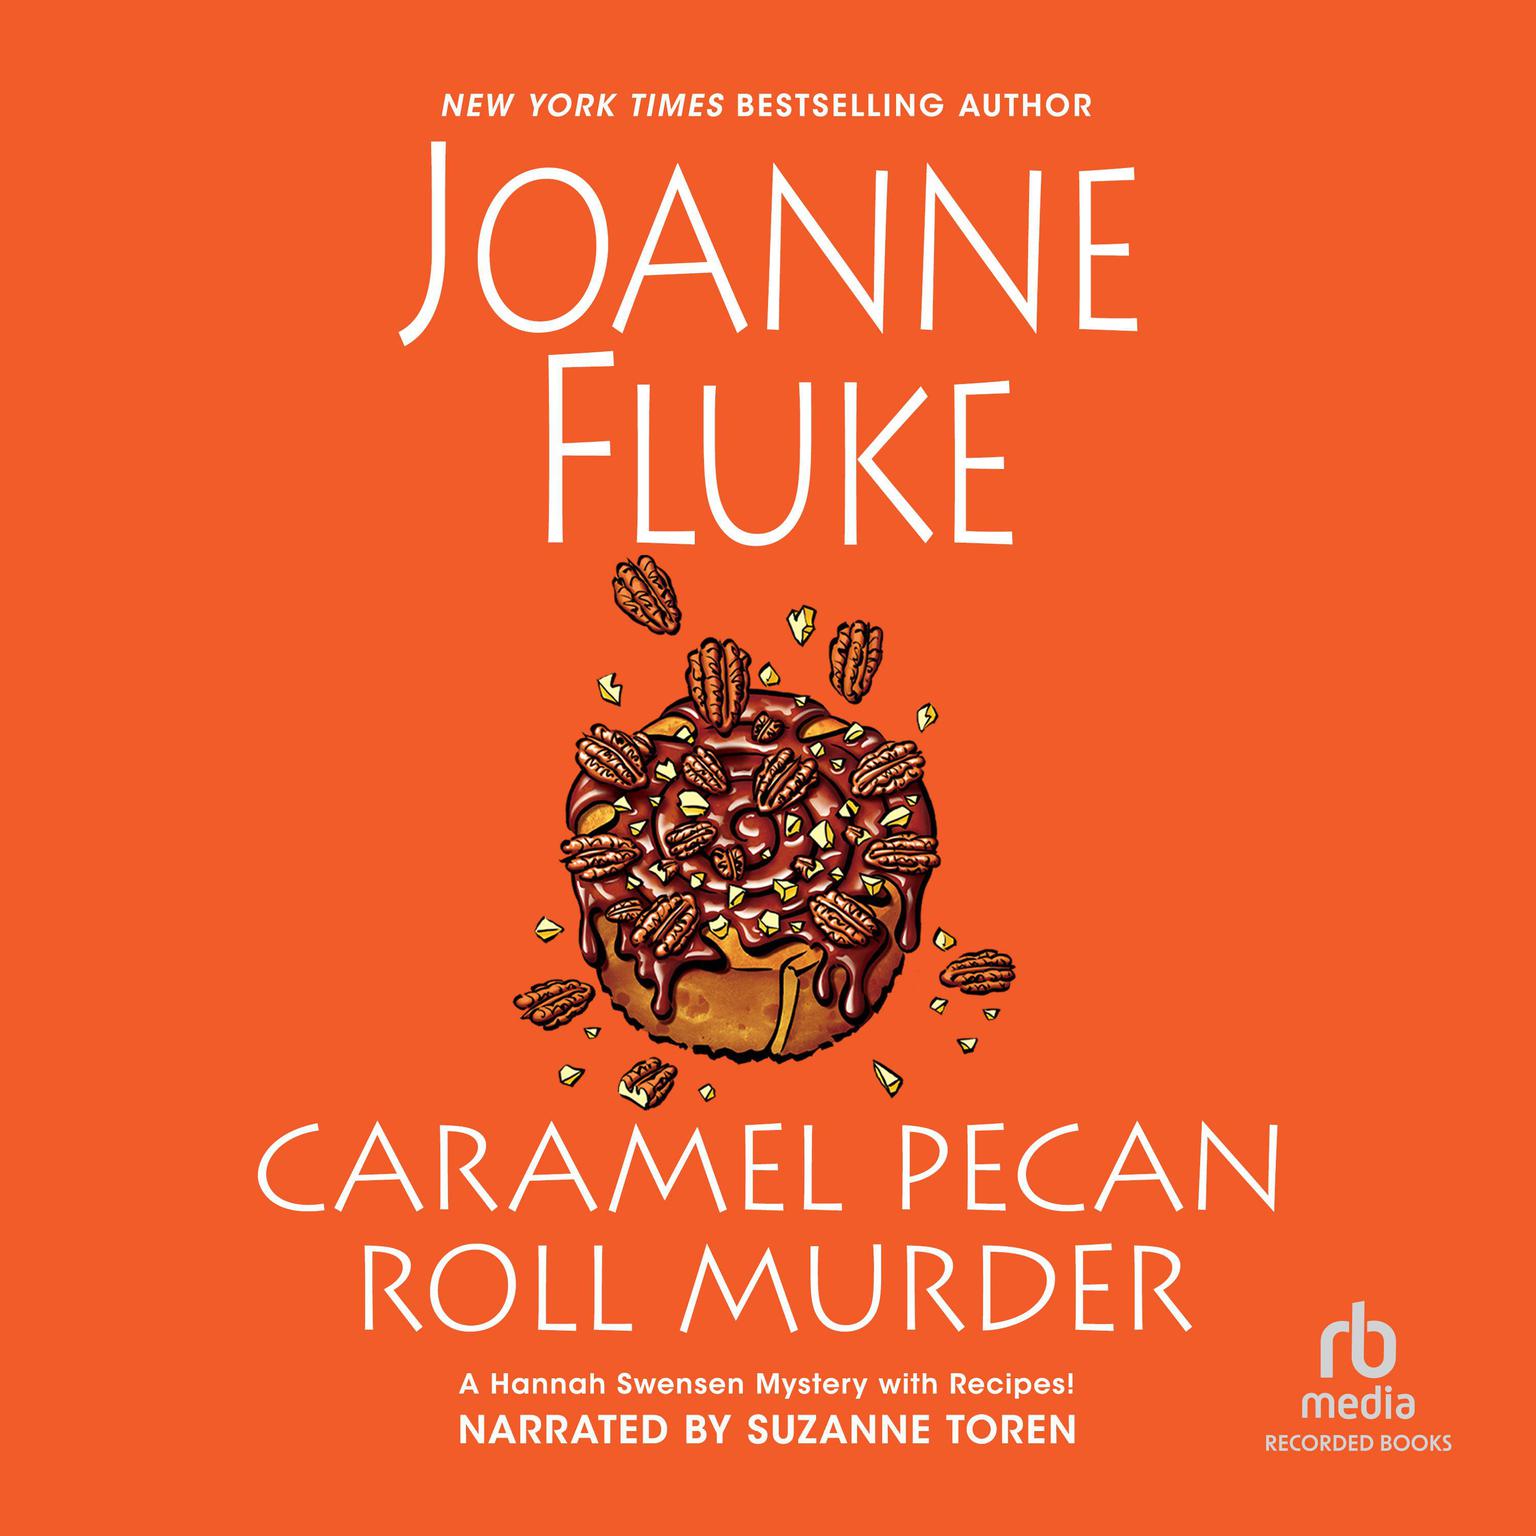 Caramel Pecan Roll Murder Audiobook, by Joanne Fluke